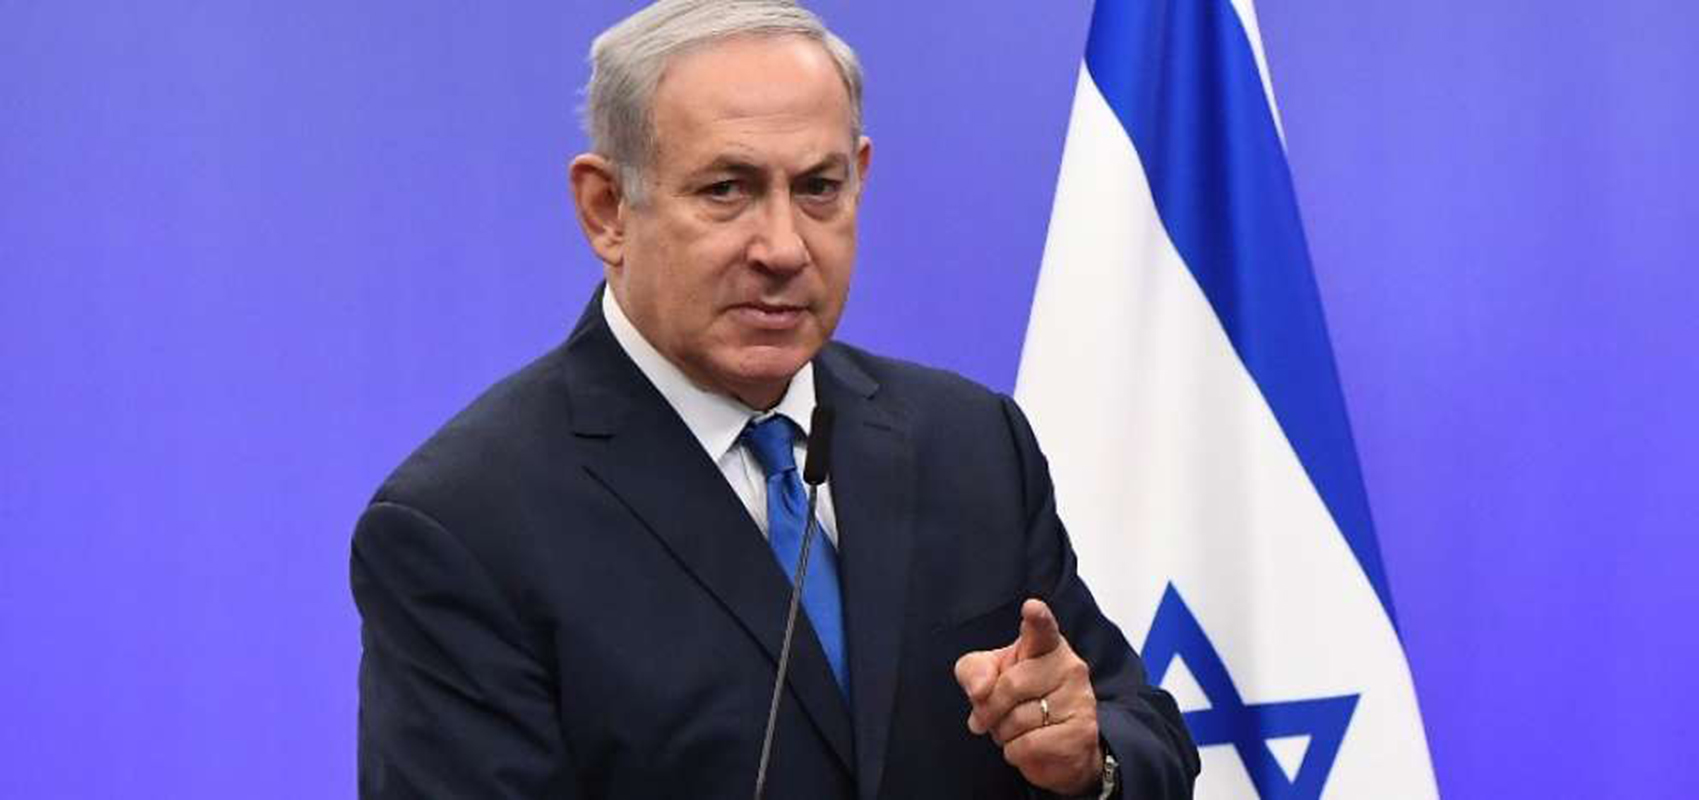 Netanyahu Reconocer Jerusalén como capital de Israel hace posible la paz